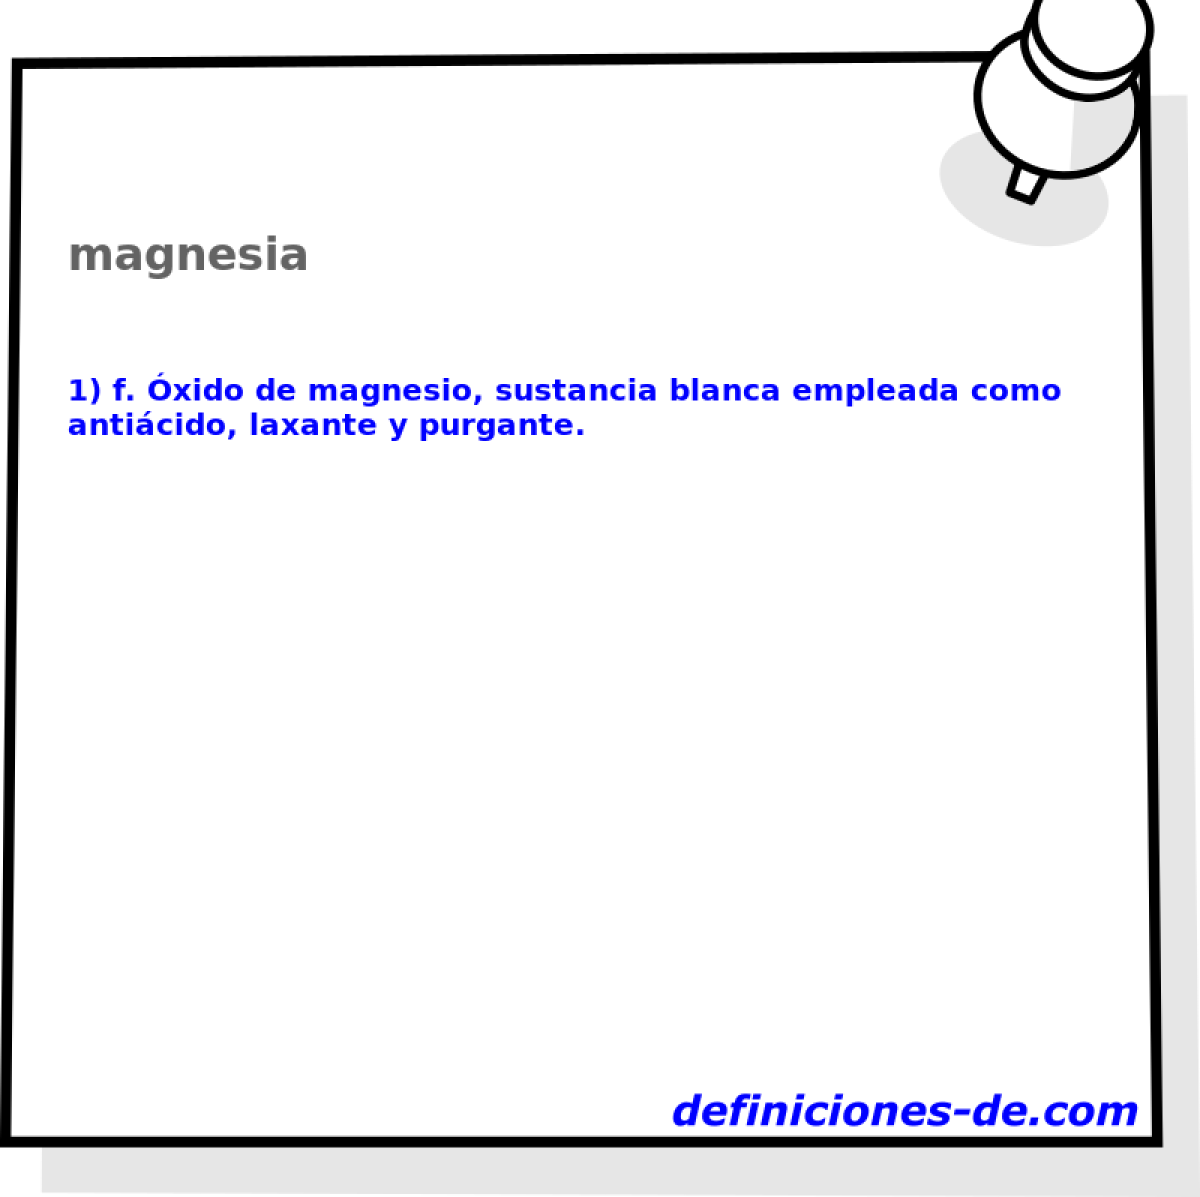 magnesia 